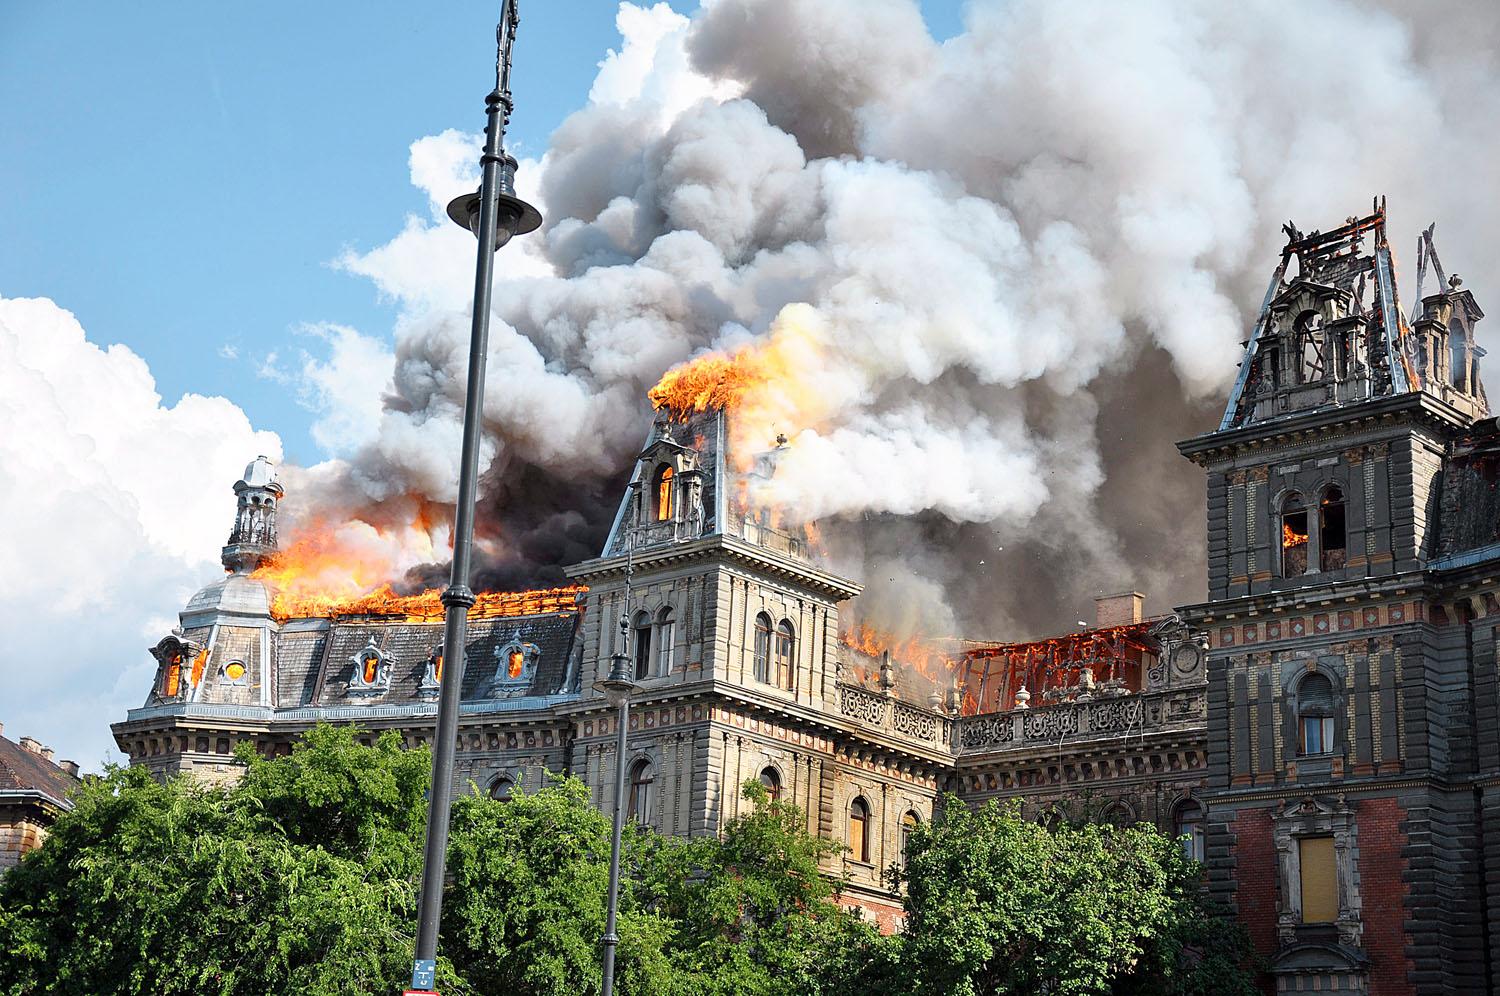 Tavaly július 15-én esély sem volt eloltani a lángoló házat a Kodály köröndön